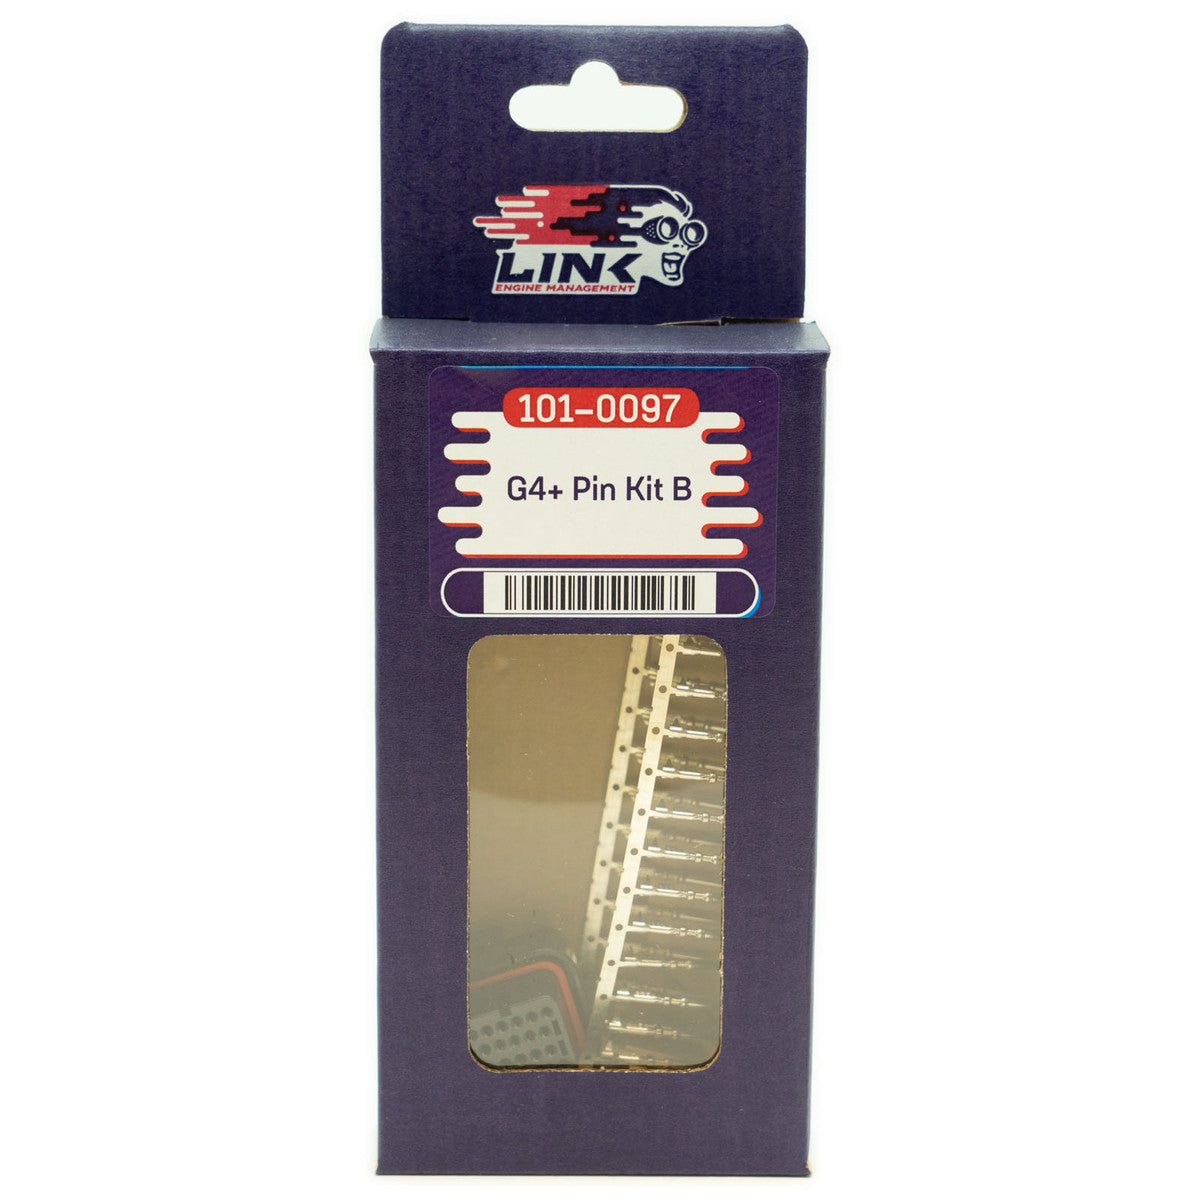 LINK Pin Kit B (TKB)